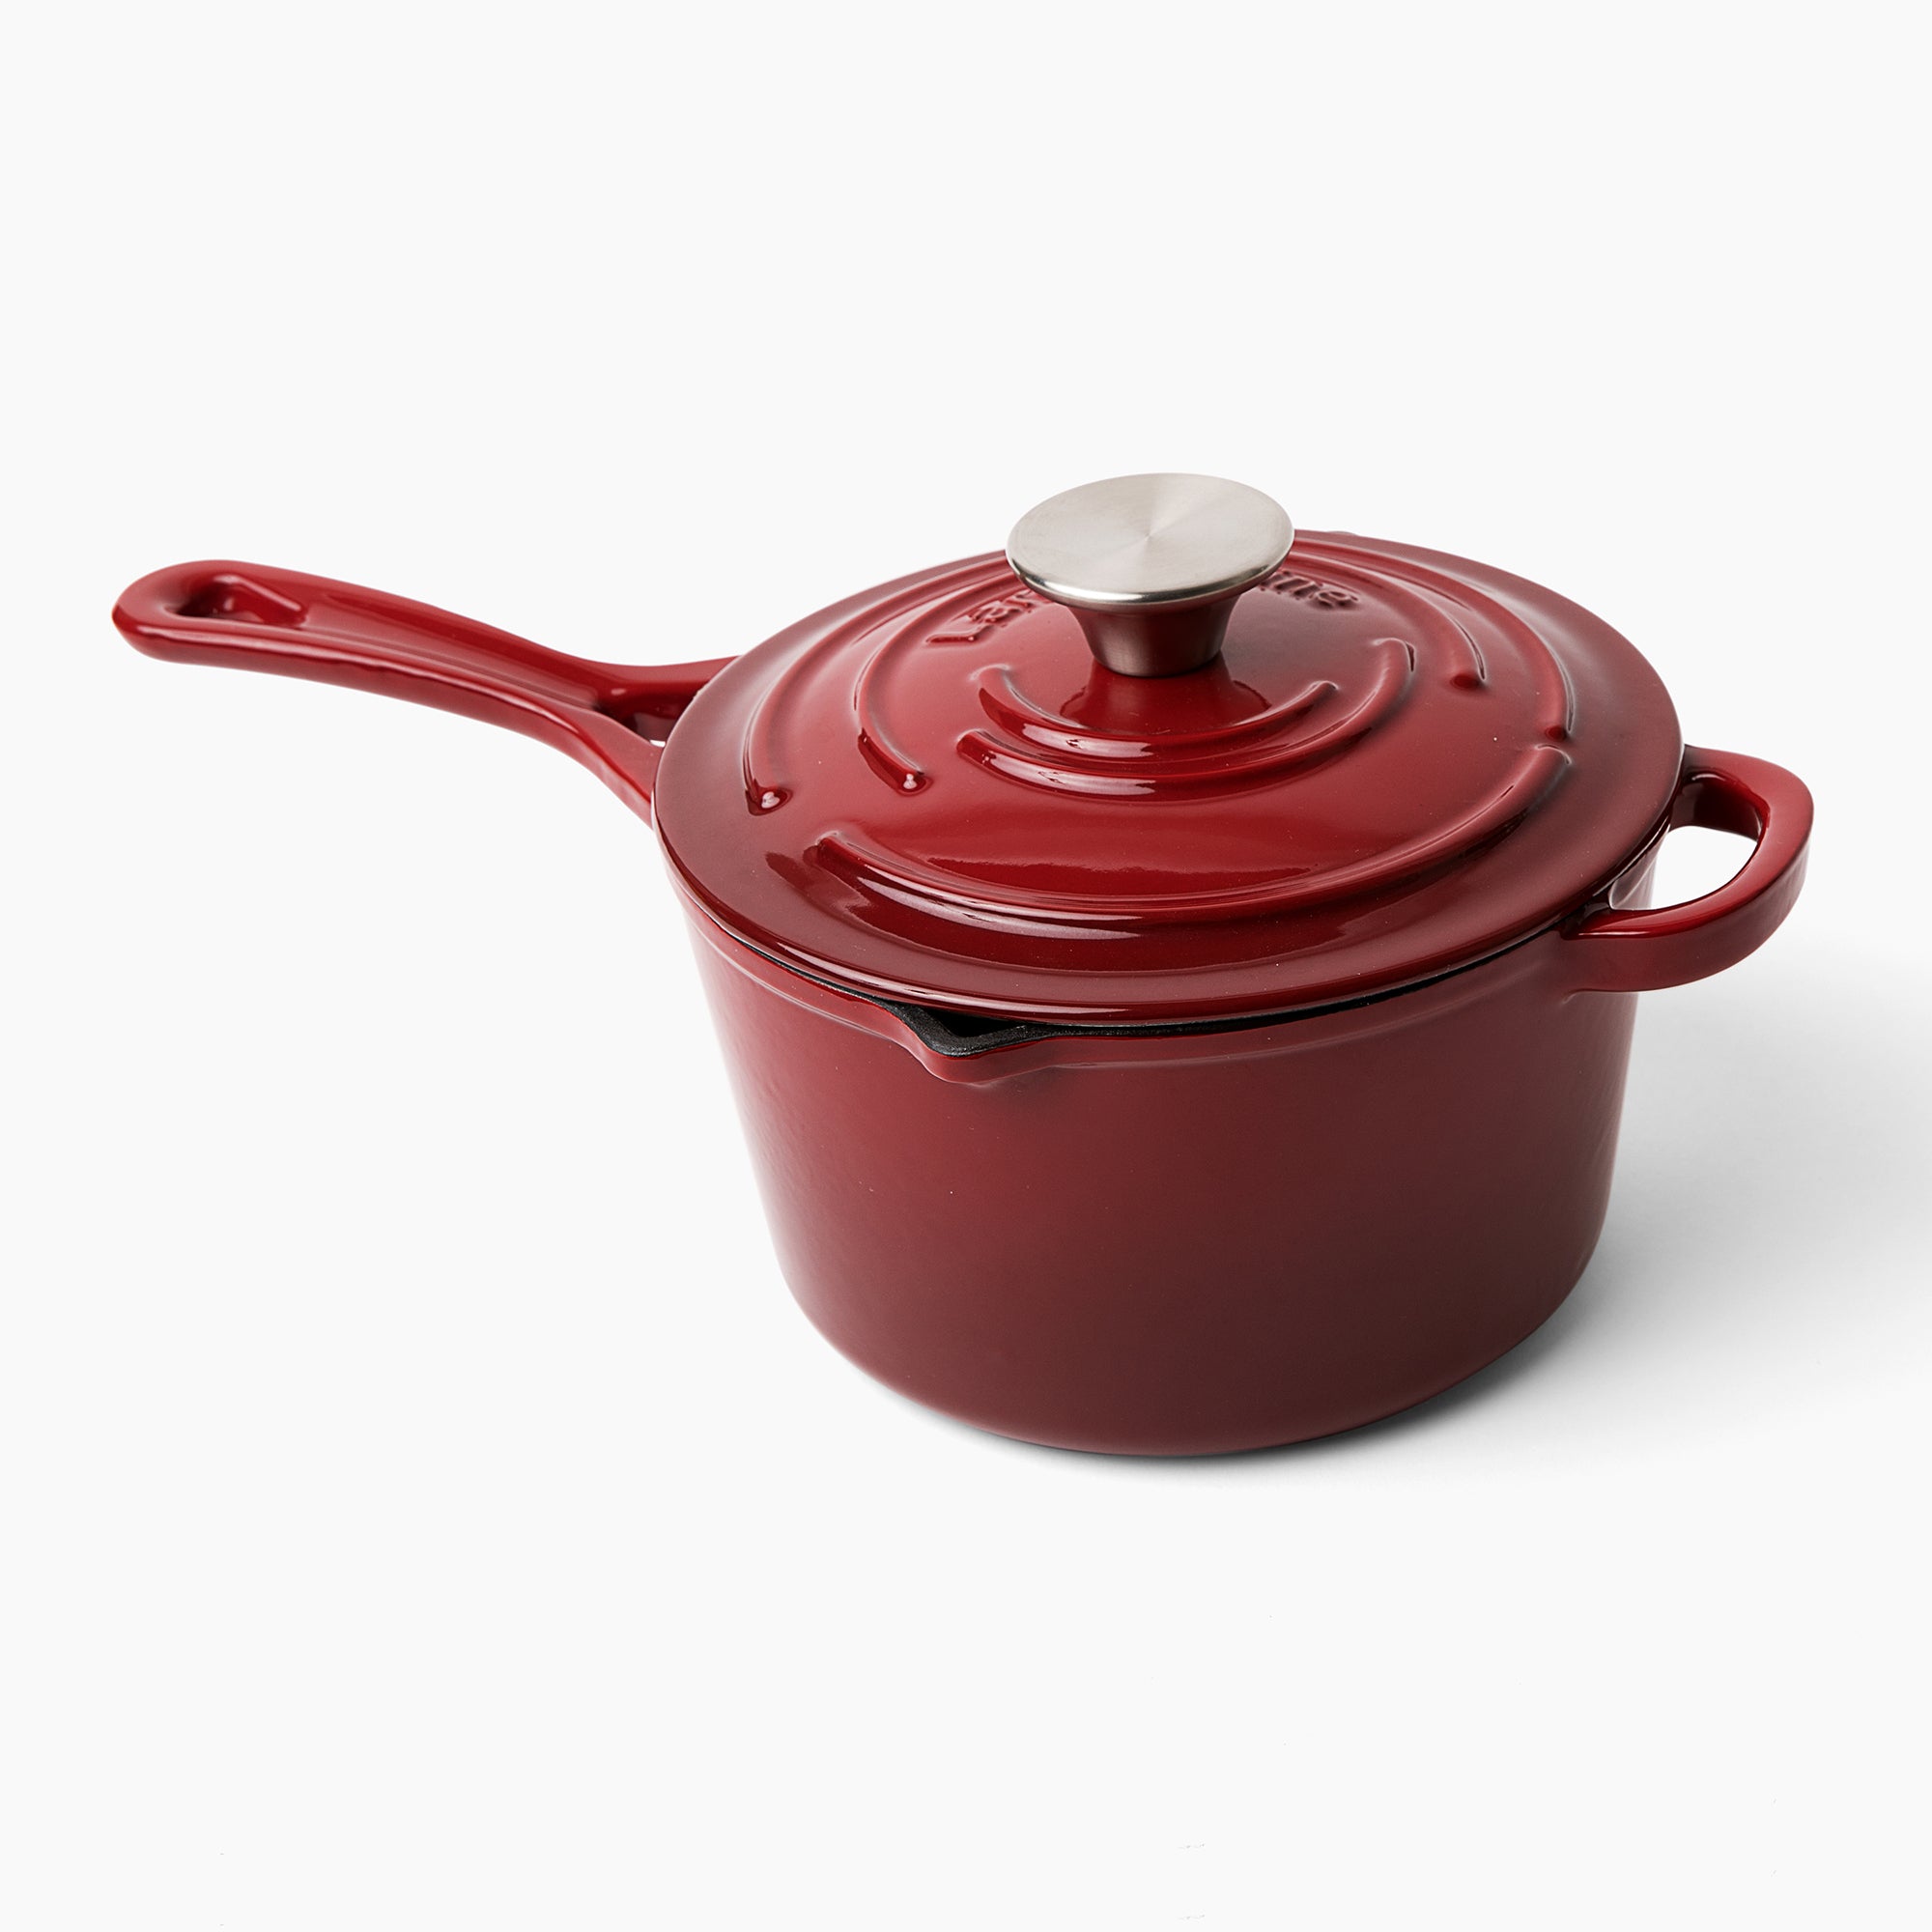 Le Creuset cast-iron saucepan 18 cm, 1,4L red